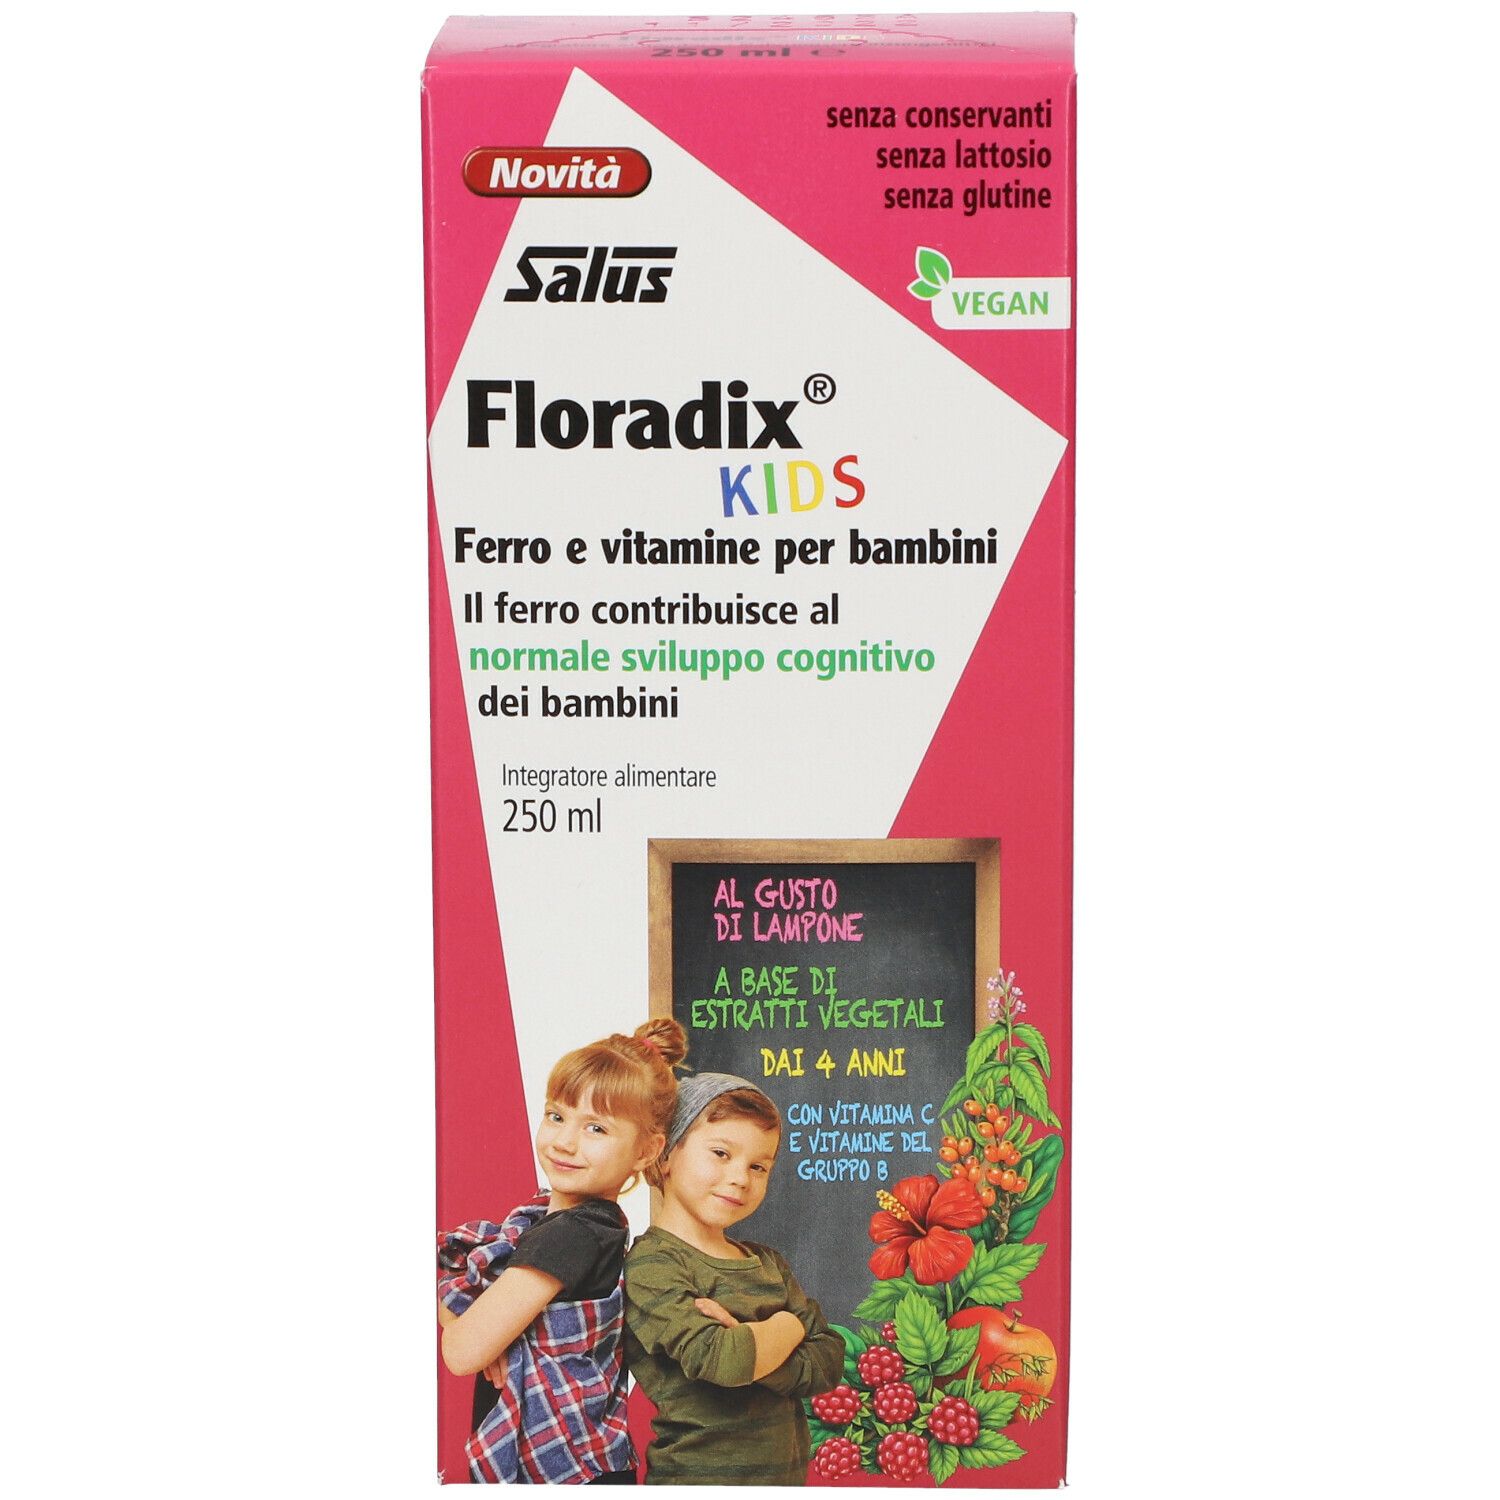 Salus Floradix® Kids